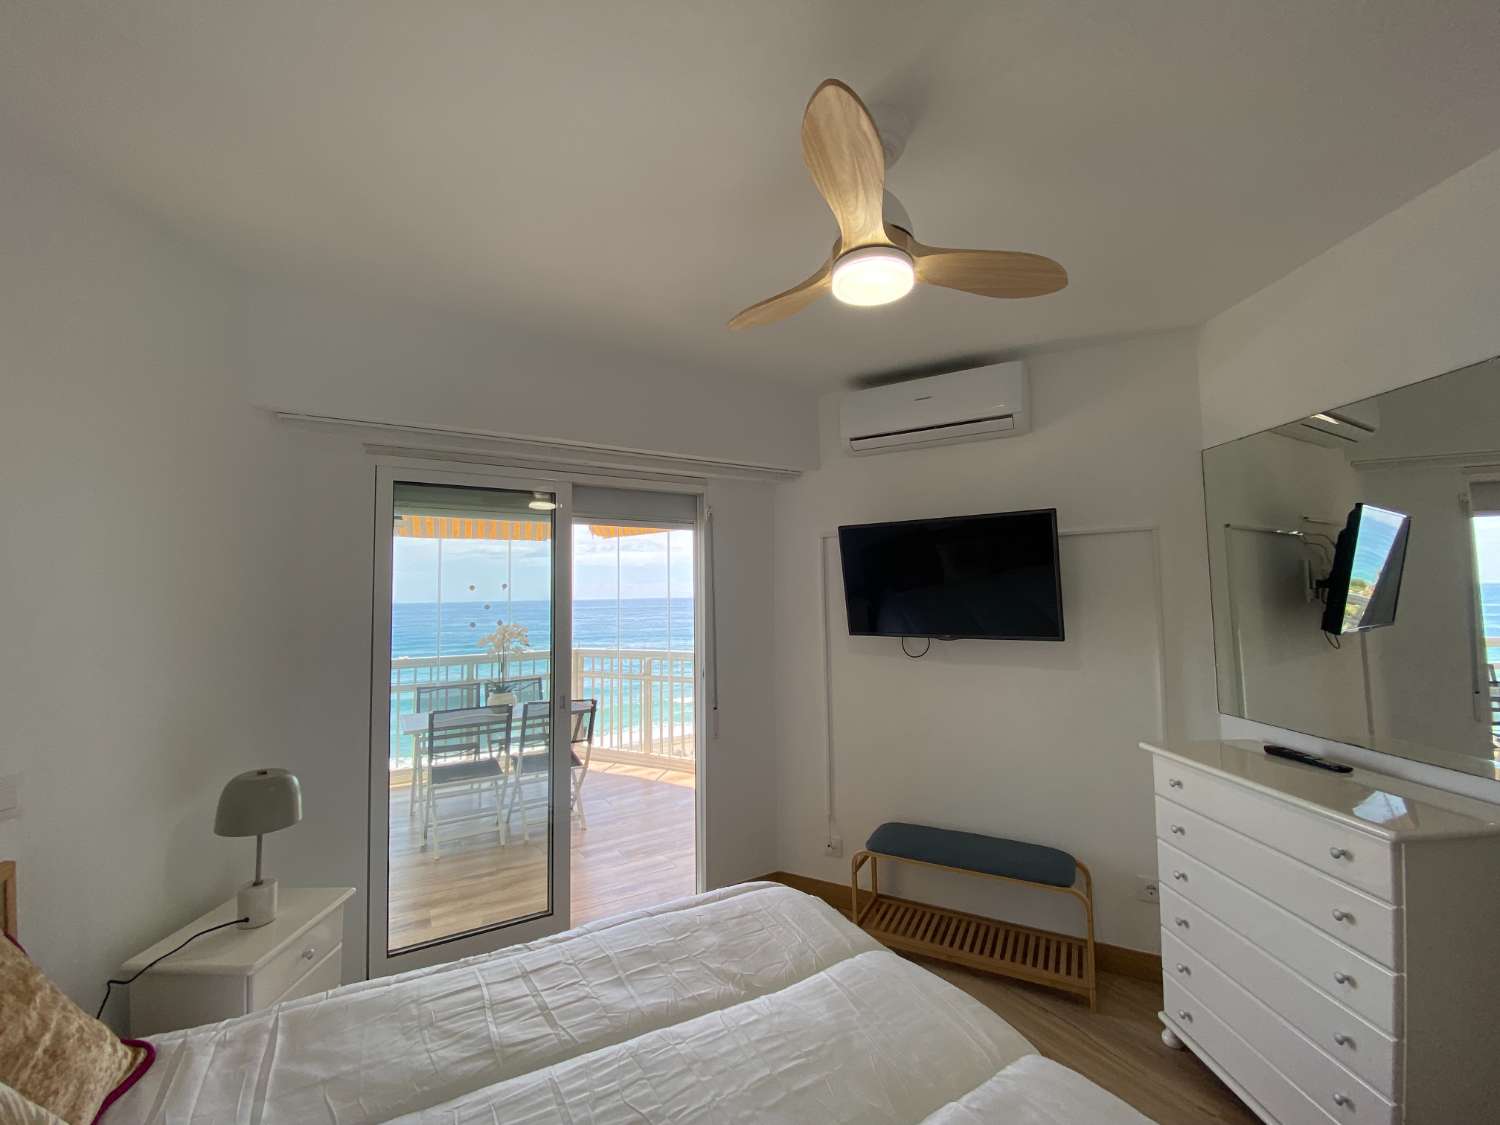 Ongelooflijk gerenoveerd appartement met panoramisch uitzicht op zee: het perfecte huis voor strandliefhebbers!&quot;